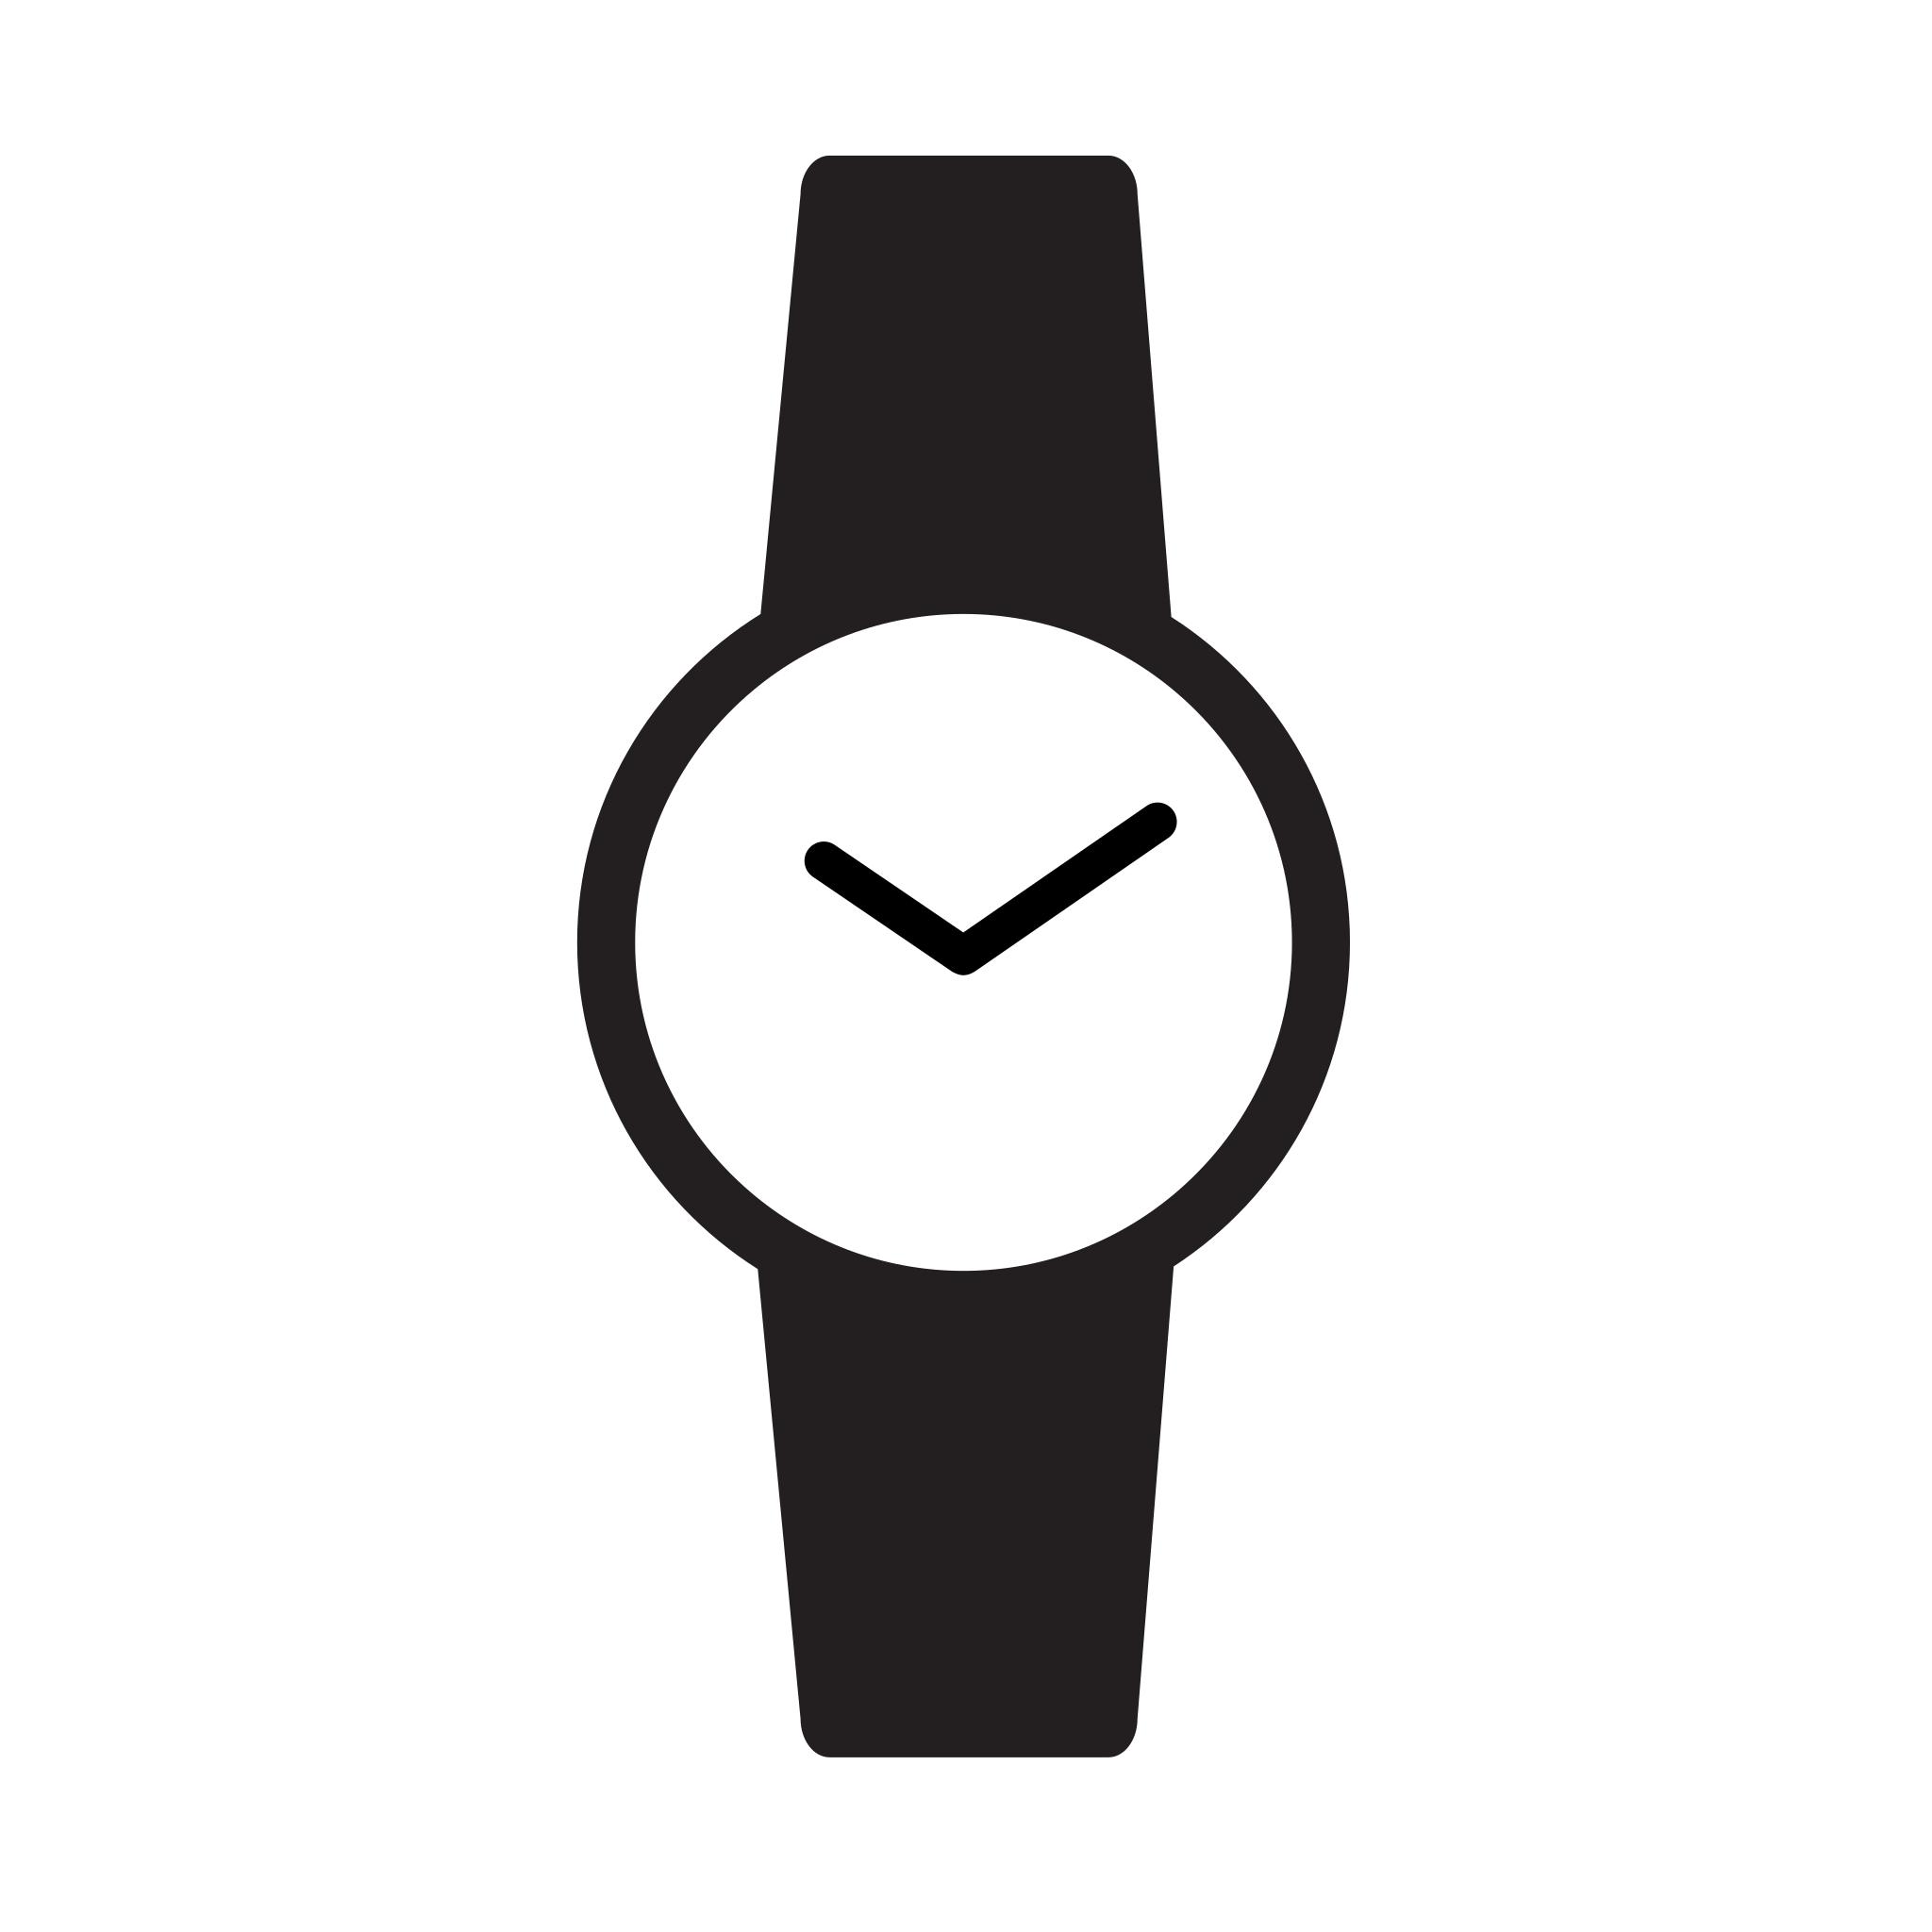 Логотип наручных часов. Векторные наручные часы. Значок наручных часов. Пиктограмма часы наручные. Часы ручные иконка.